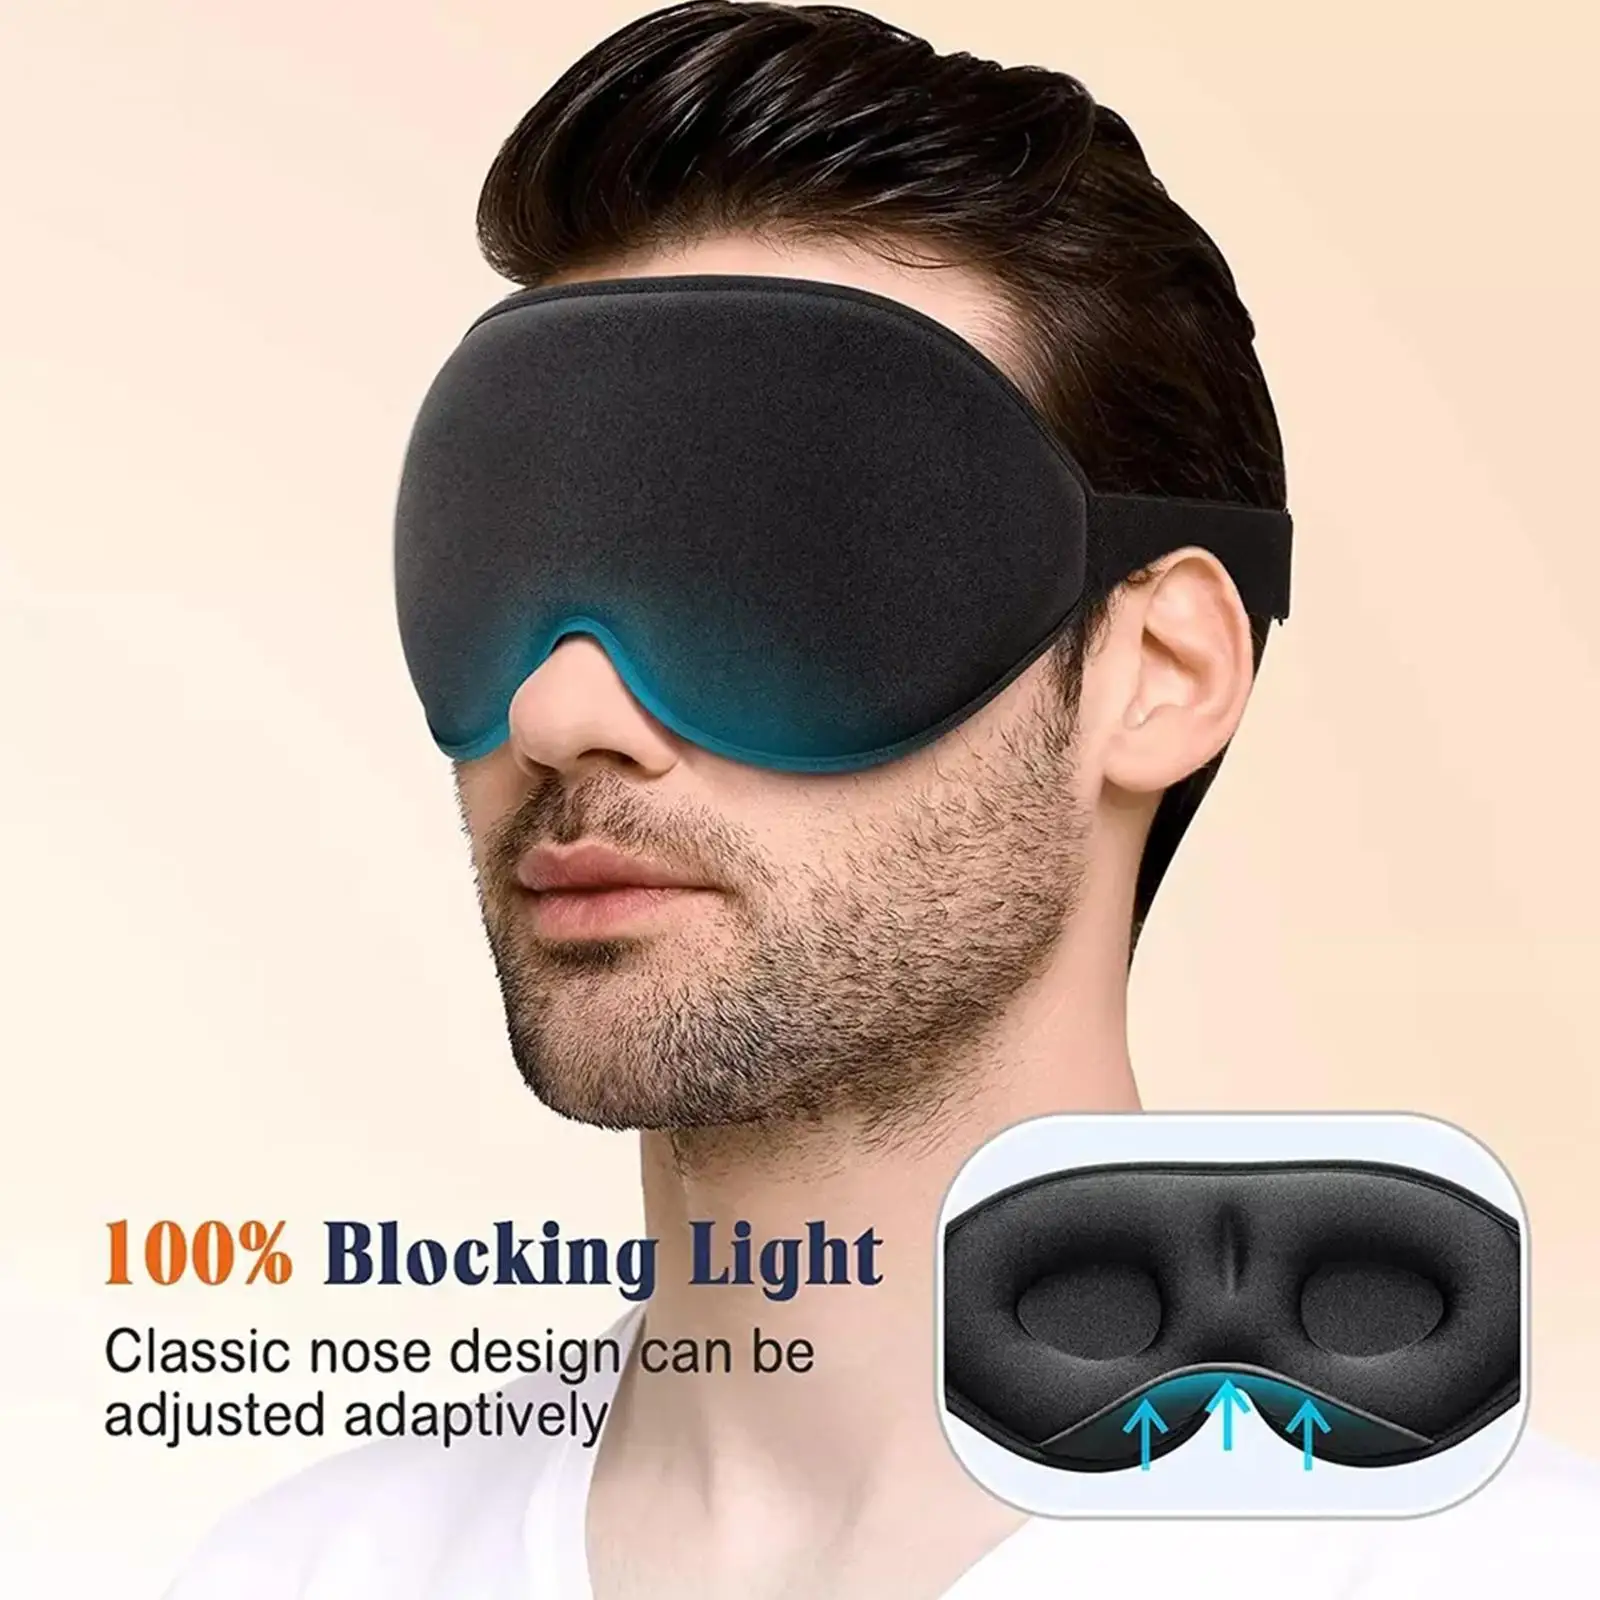 

3D Sleep Mask Blindfold Sleeping Aid Eye Mask Soft Memory Foam Face Mask Eyeshade 99% Blockout Light Slaapmasker Eye Cover Patch